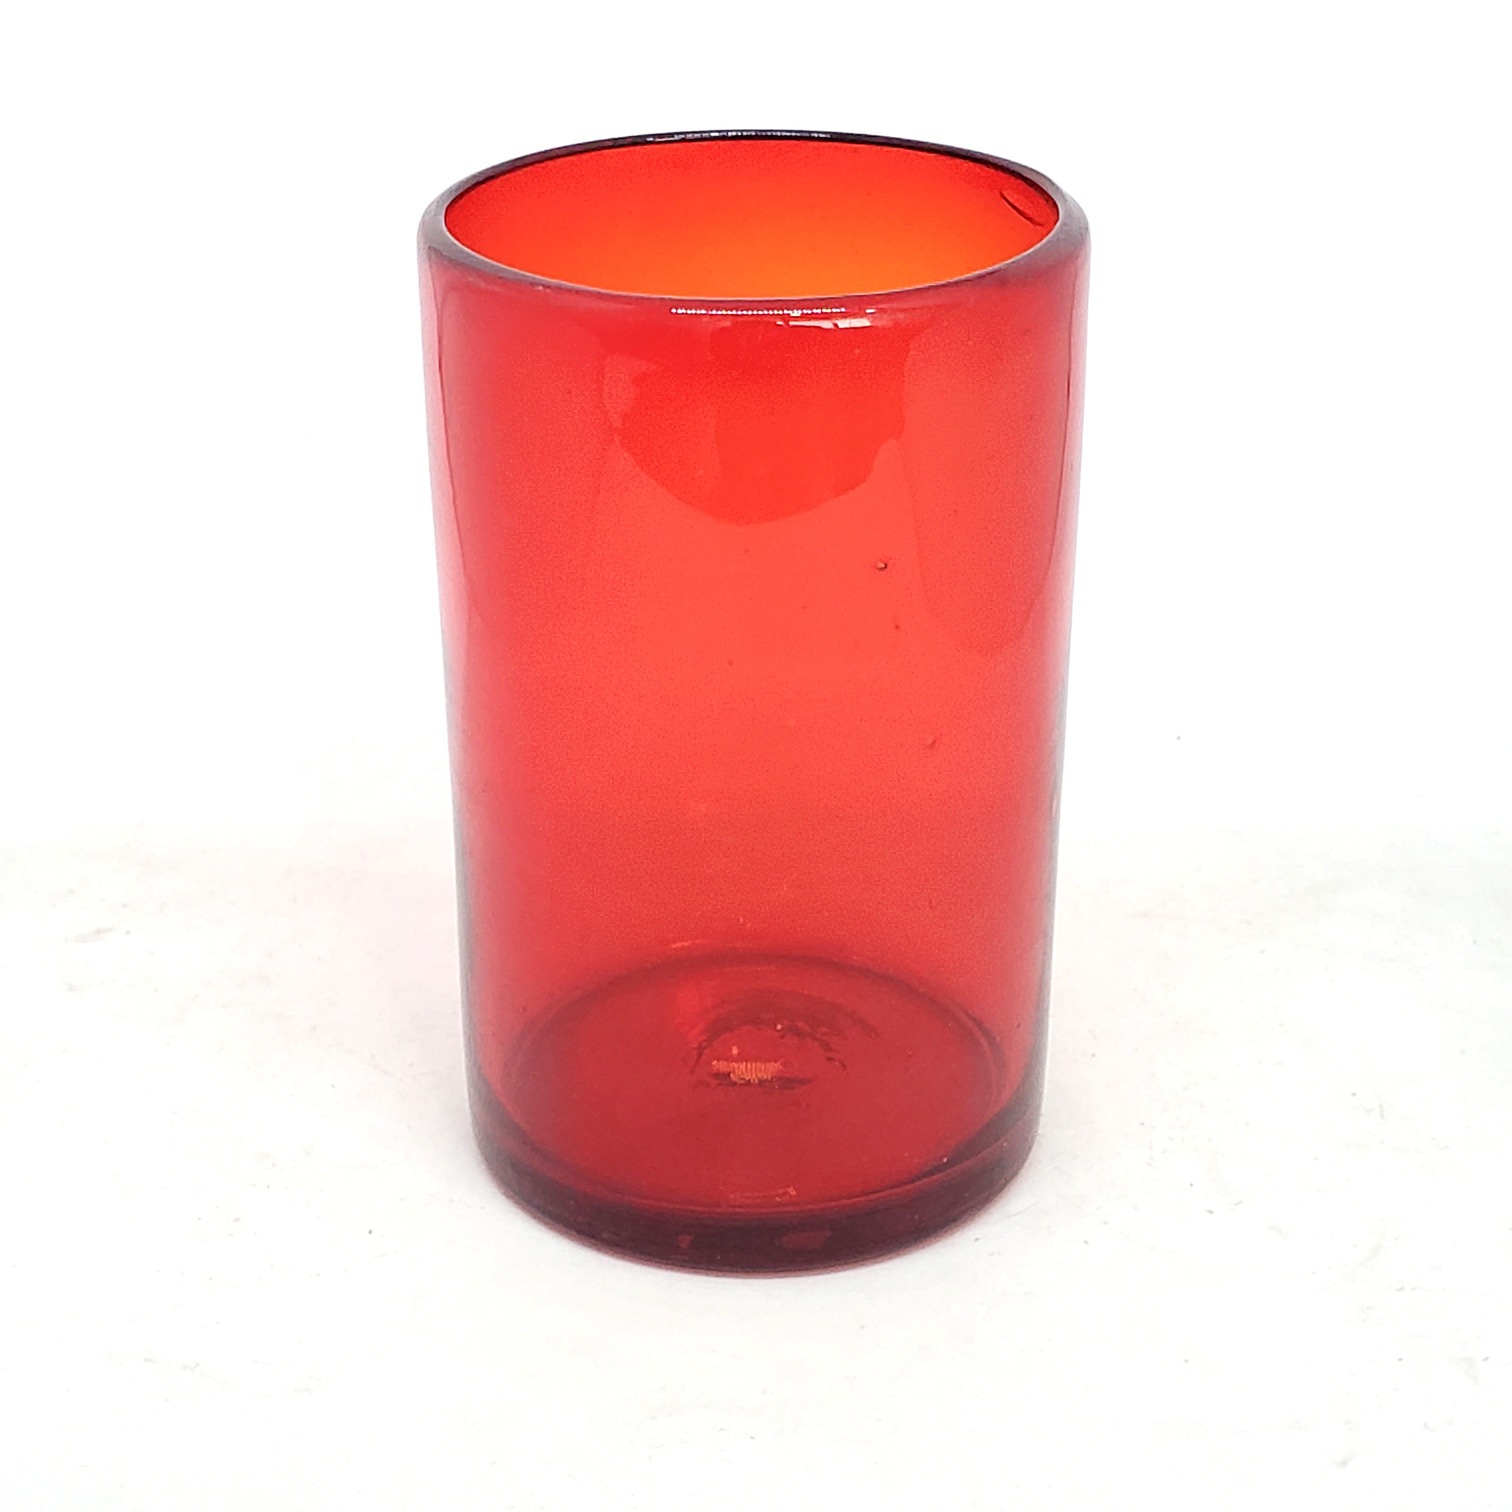 Novedades / Juego de 6 vasos grandes color rojo rub� / �stos artesanales vasos le dar�n un toque cl�sico a su bebida favorita.